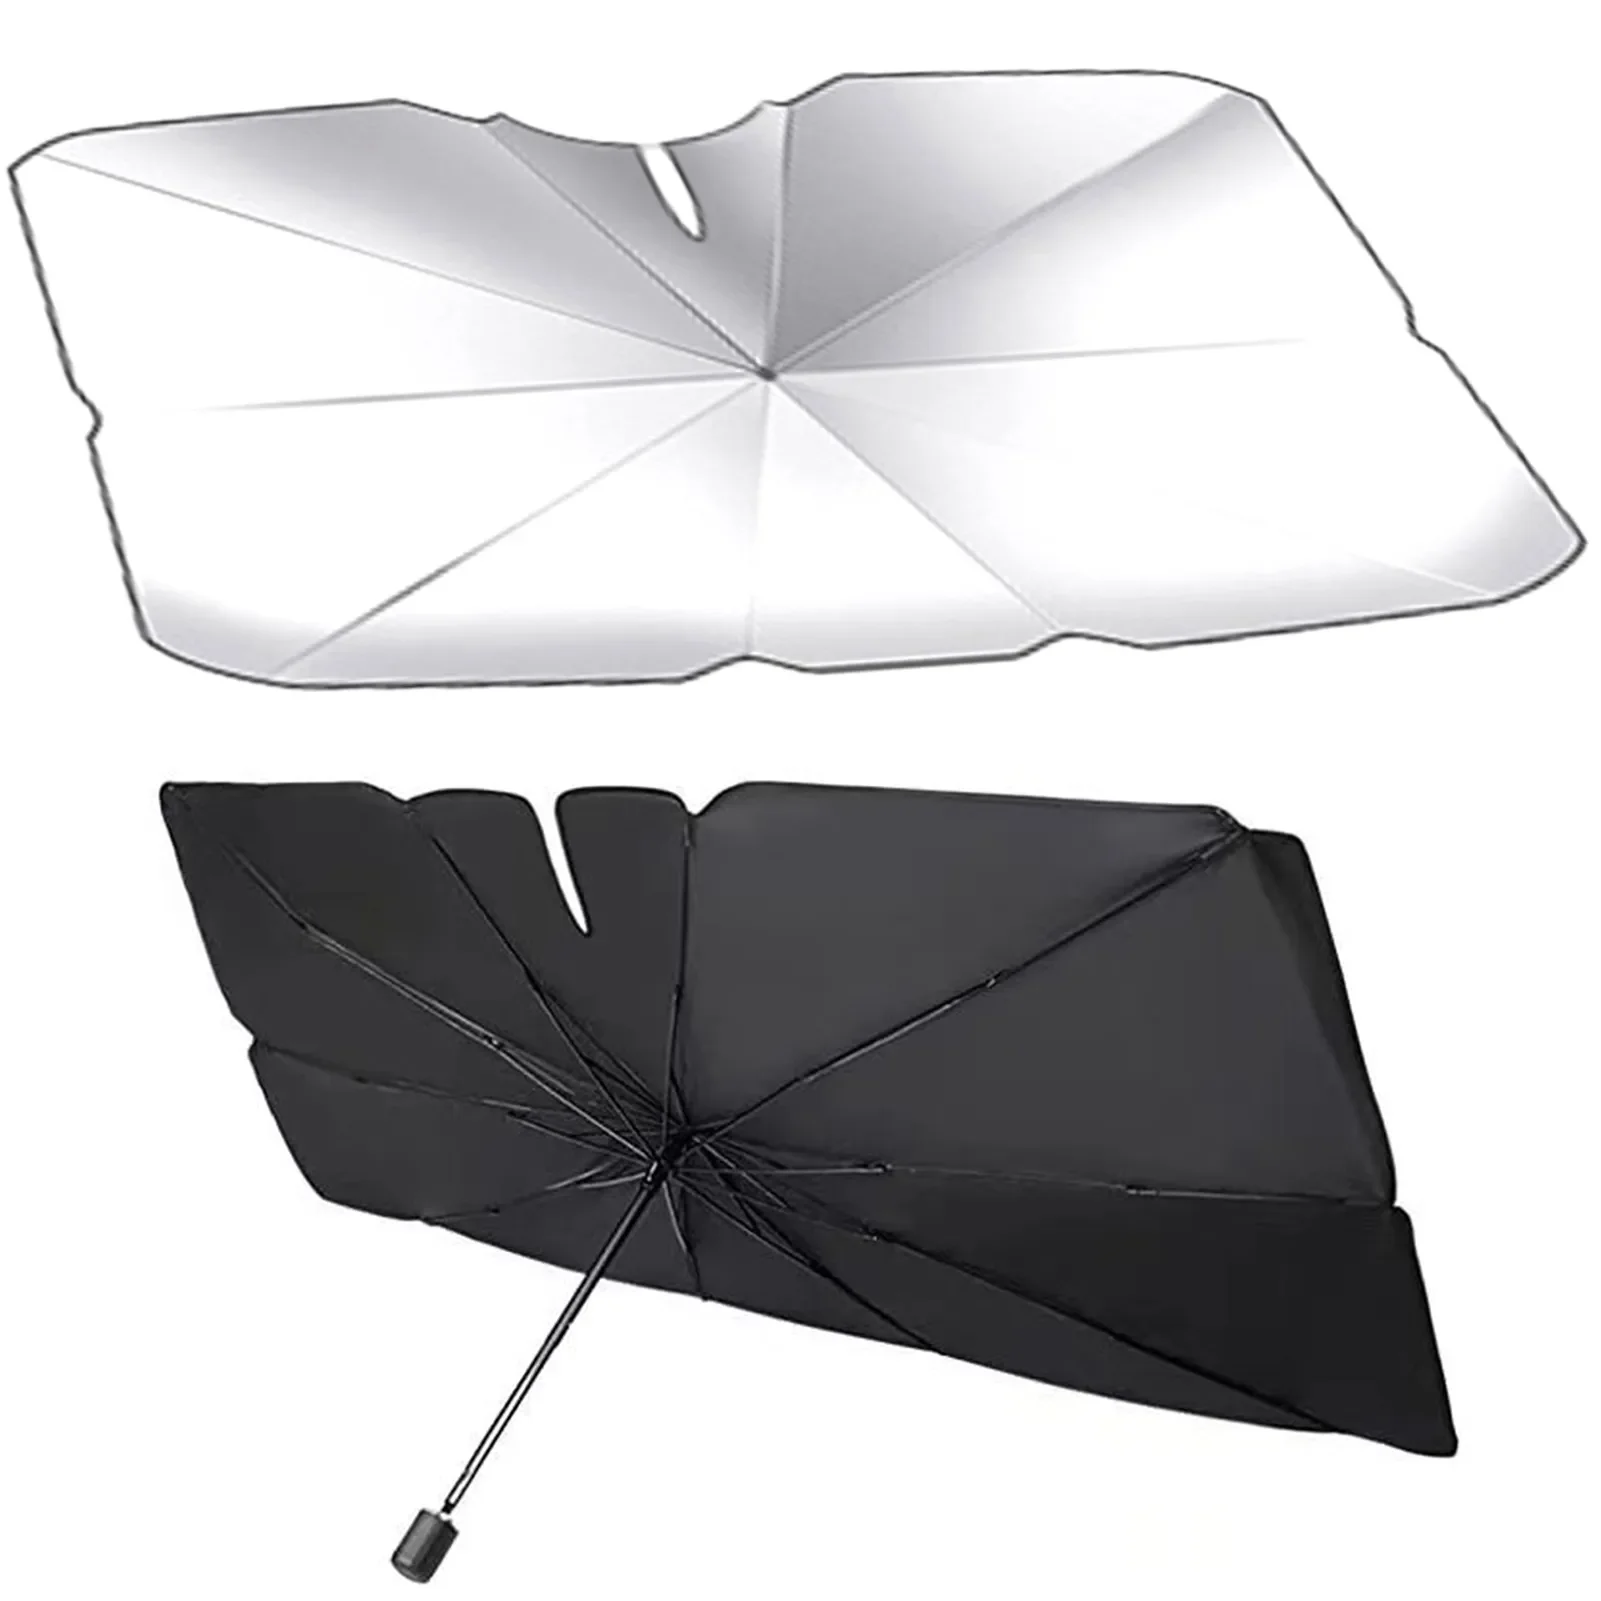 

Солнцезащитный зонт на лобовое стекло автомобиля, защита от УФ-лучей, теплоизоляция, зонтик, автомобильный передний оконный чехол, защита интерьера